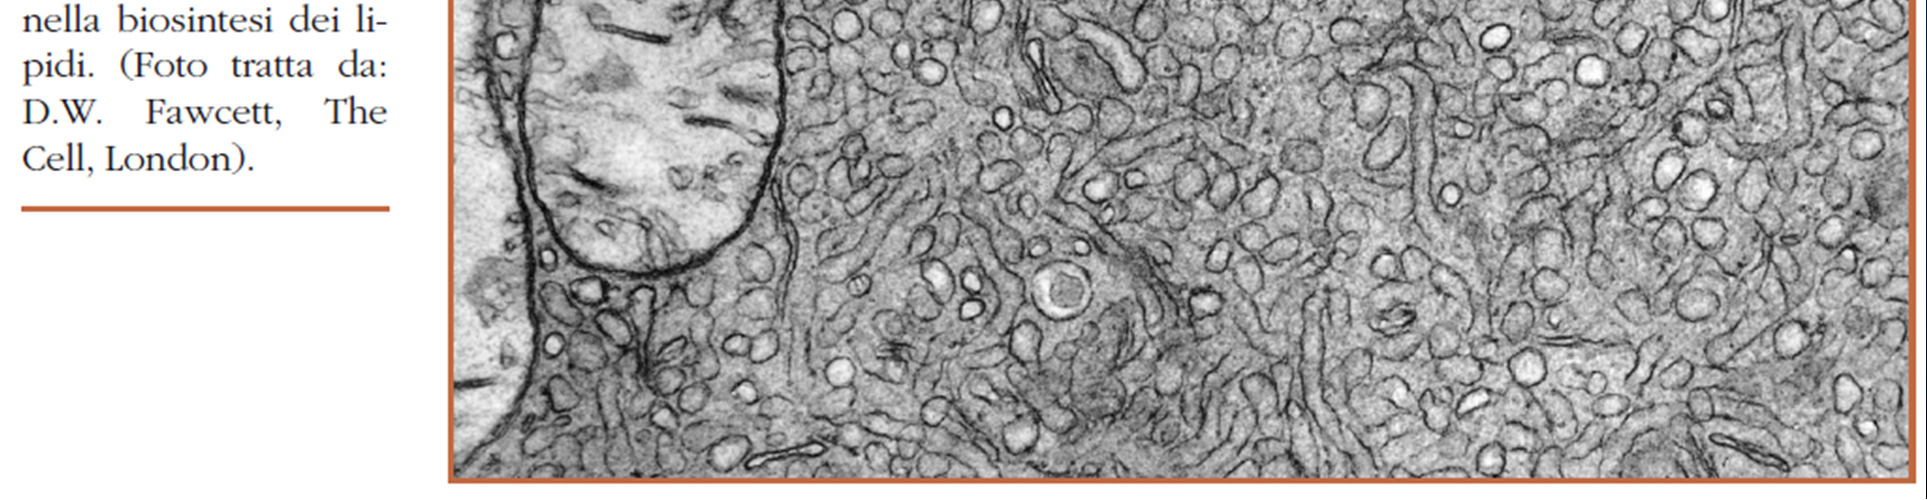 cortico-surrenalici) Cellule epatiche: produzione di particelle lipoproteiche che portano i lipidi nel sangue La